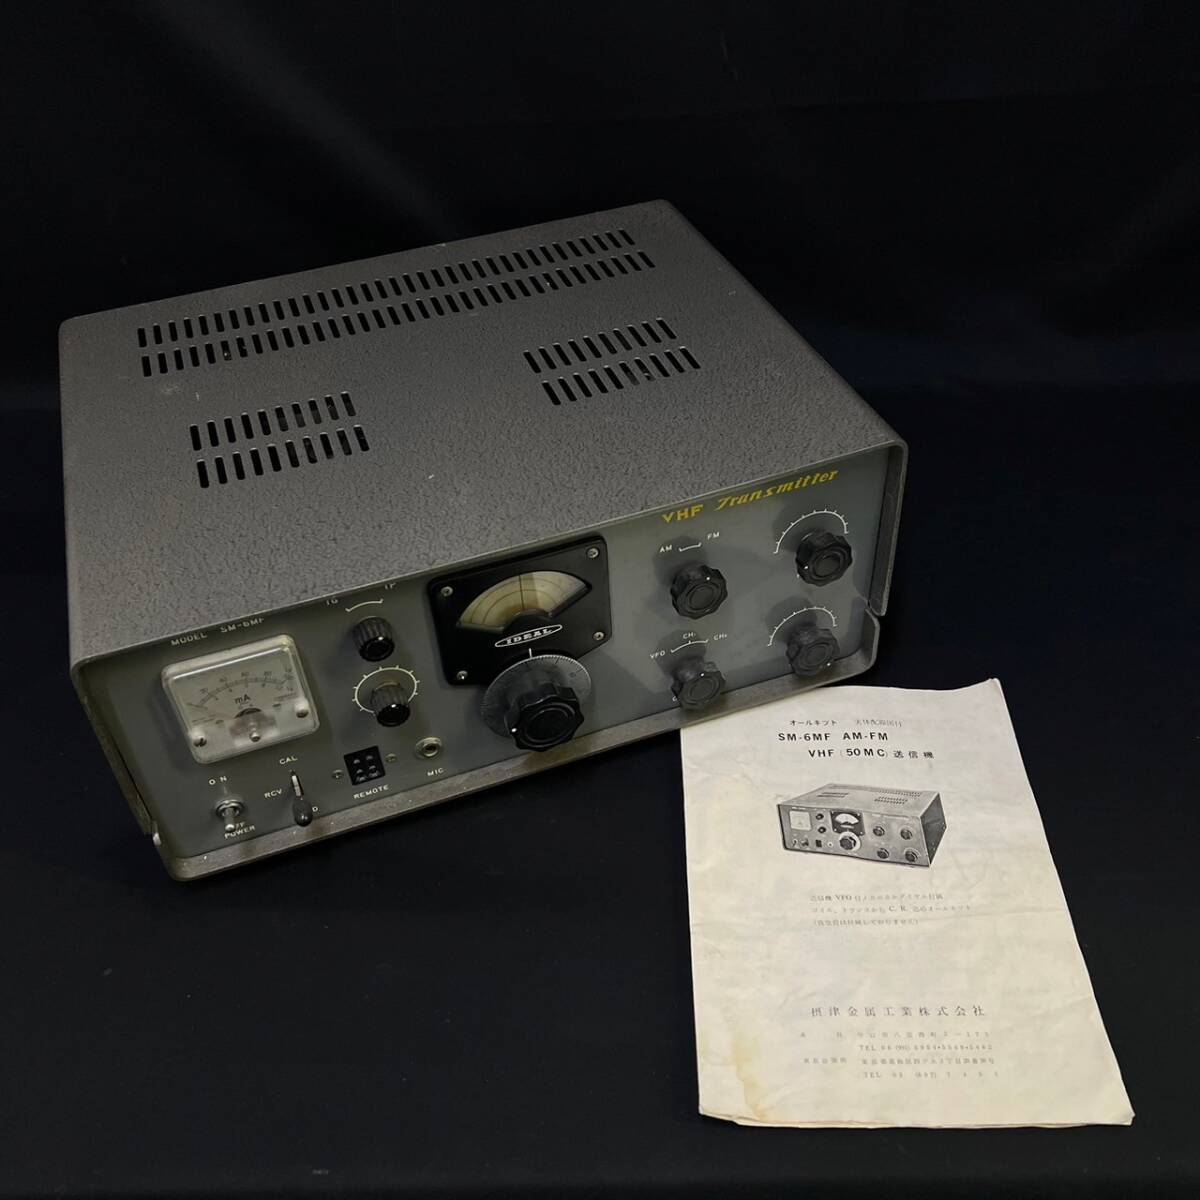 BDg235I 120 真空管 無線機 SM-6MF VHF TRANSMITTER トランスミッター AM-FM 無線 アマチュア無線 送信機 アンティーク レトロの画像1